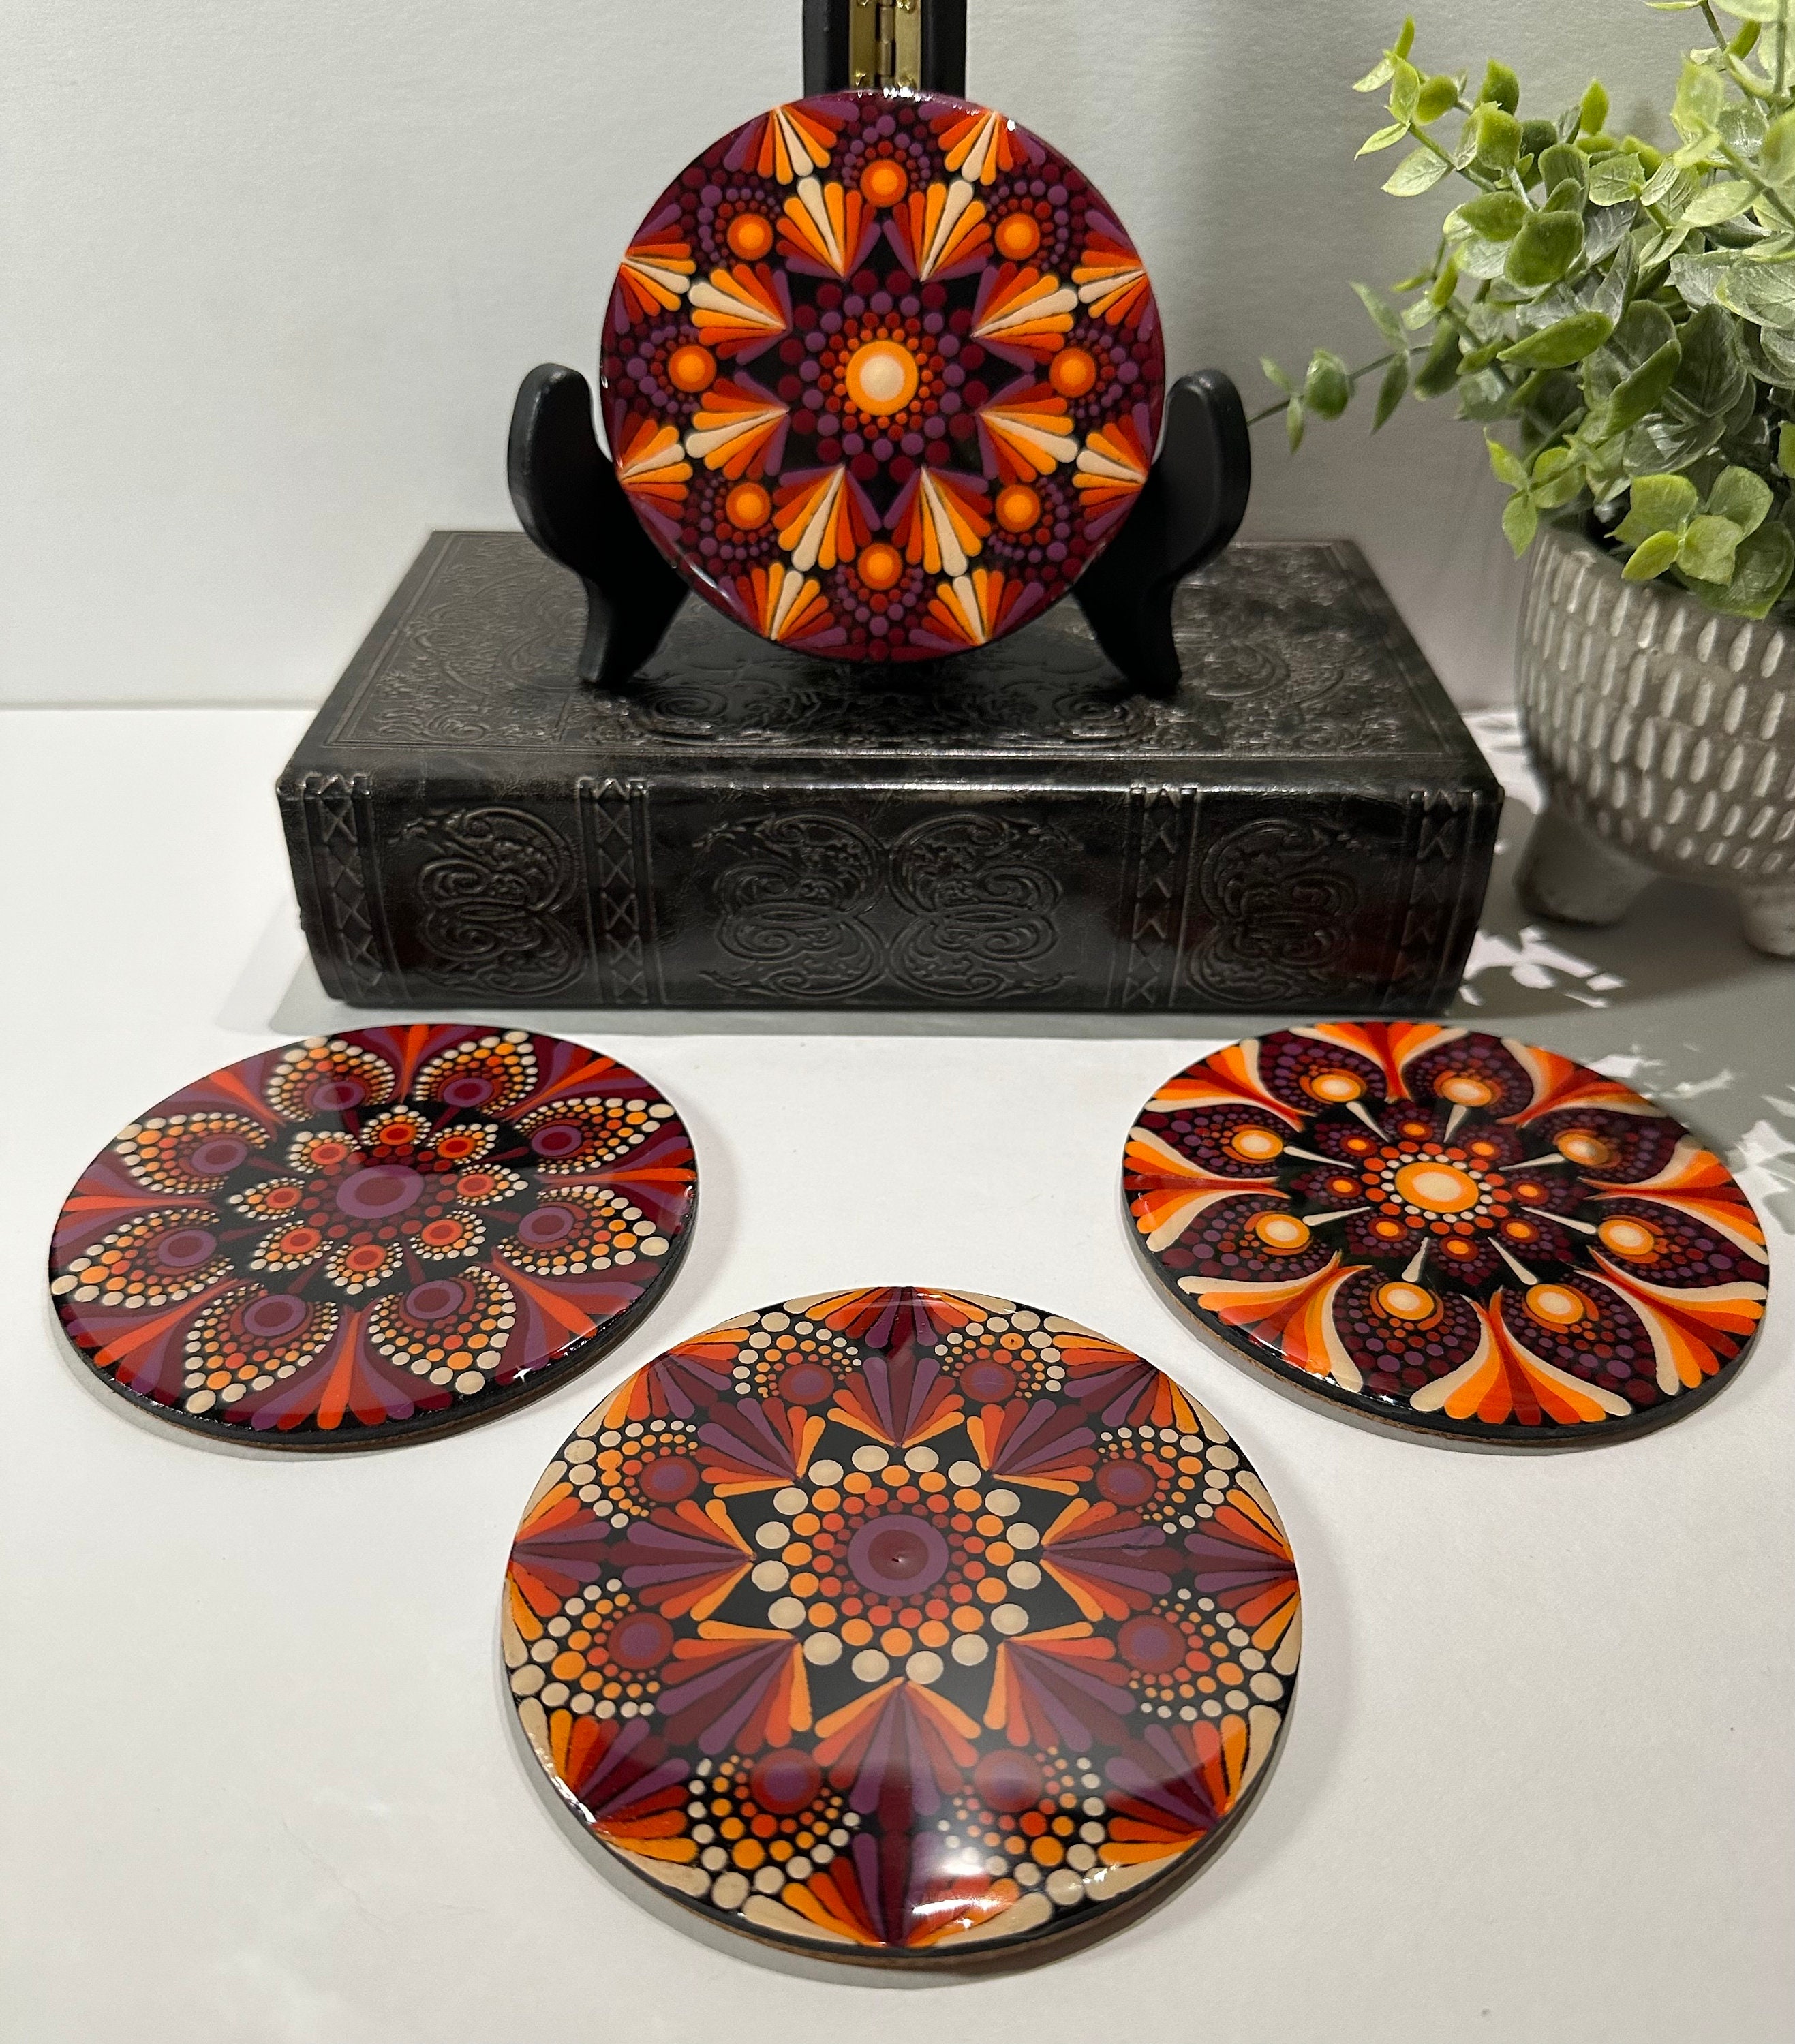 Support Me And You Get A Mandala Ceramic Coasters - Homey Ceramic